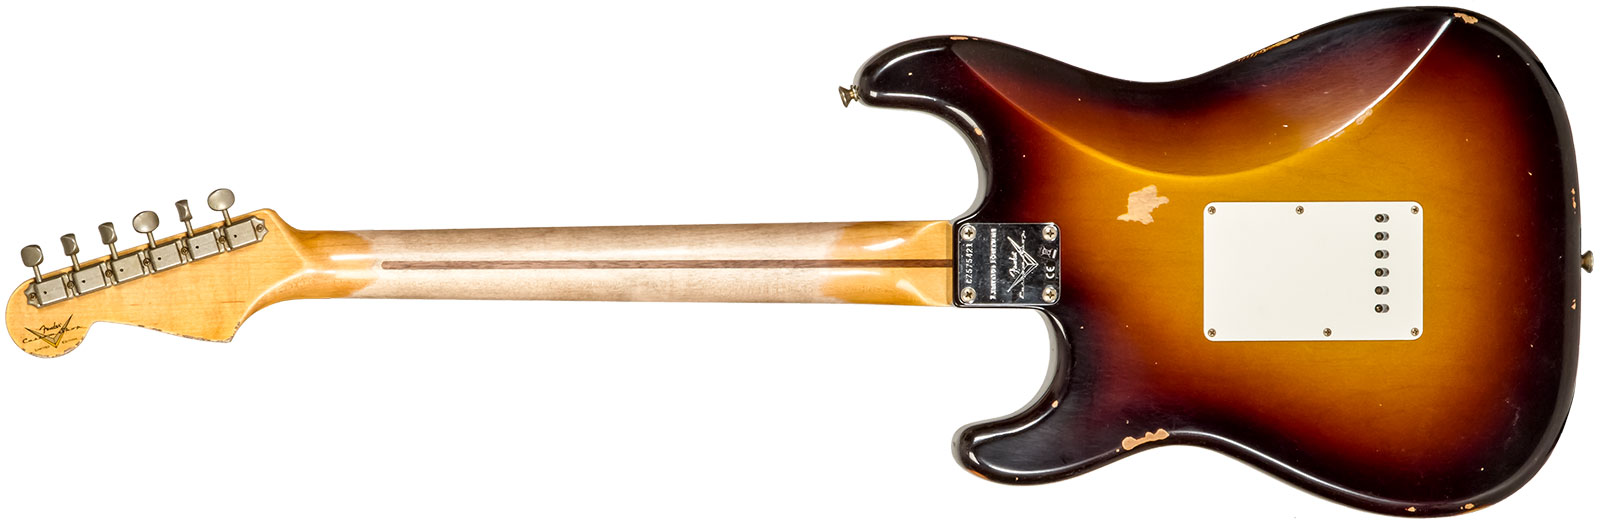 Fender Custom Shop Strat 1957 3s Trem Mn #cz575421 - Relic 2-color Sunburst - E-Gitarre in Str-Form - Variation 1